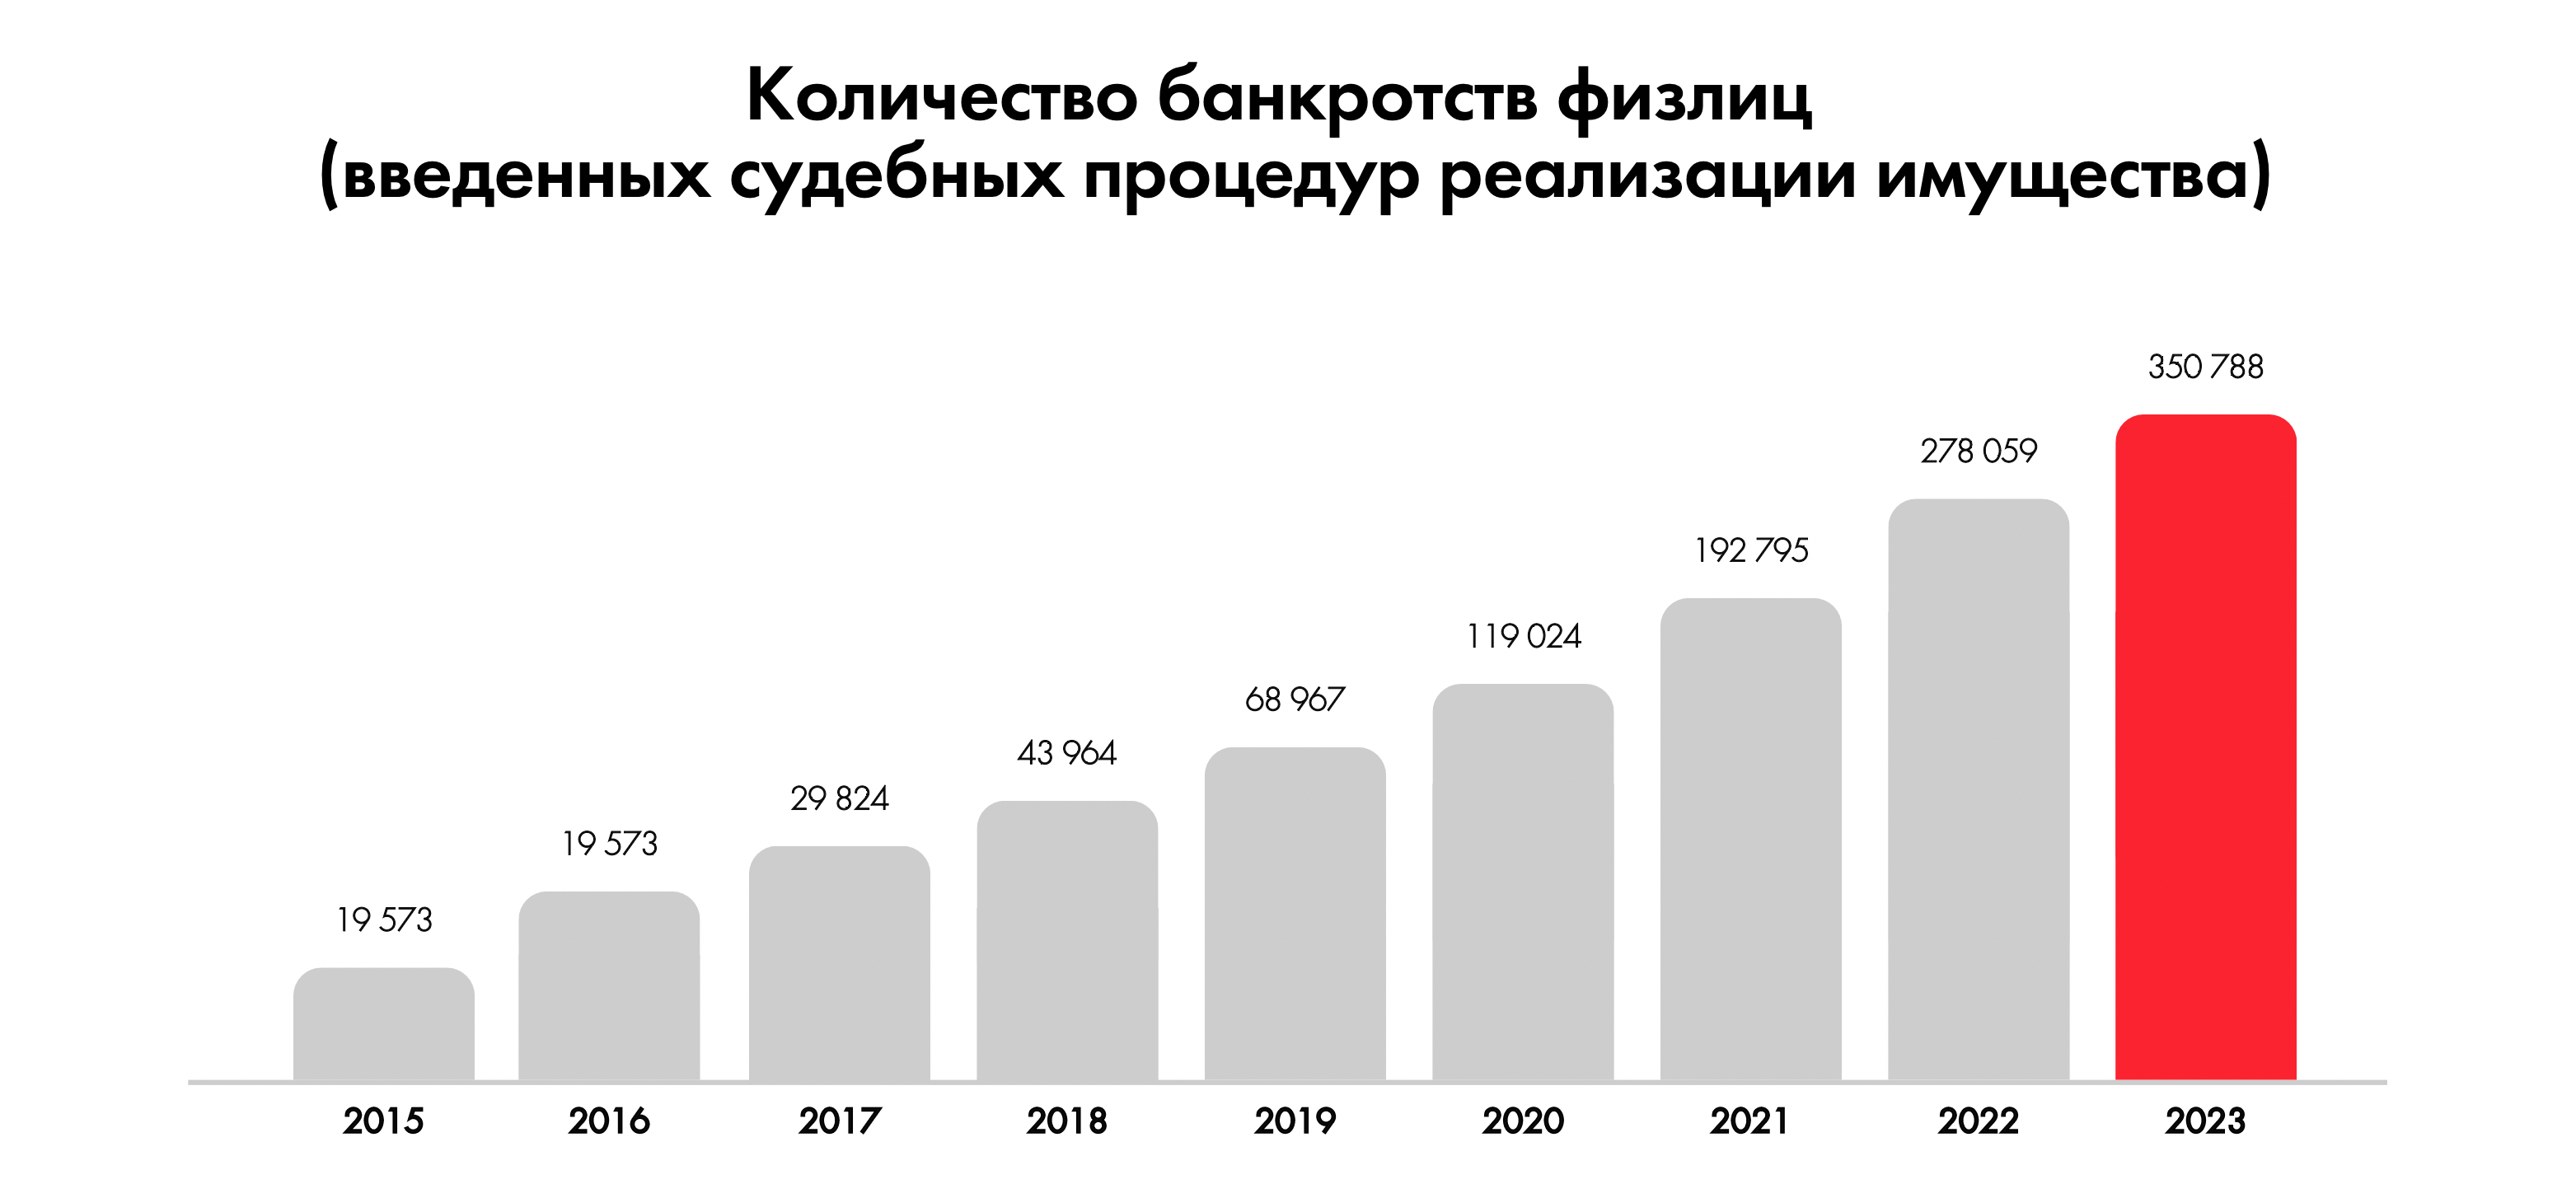 Число банкротств физических лиц с 2015 по 2023 год